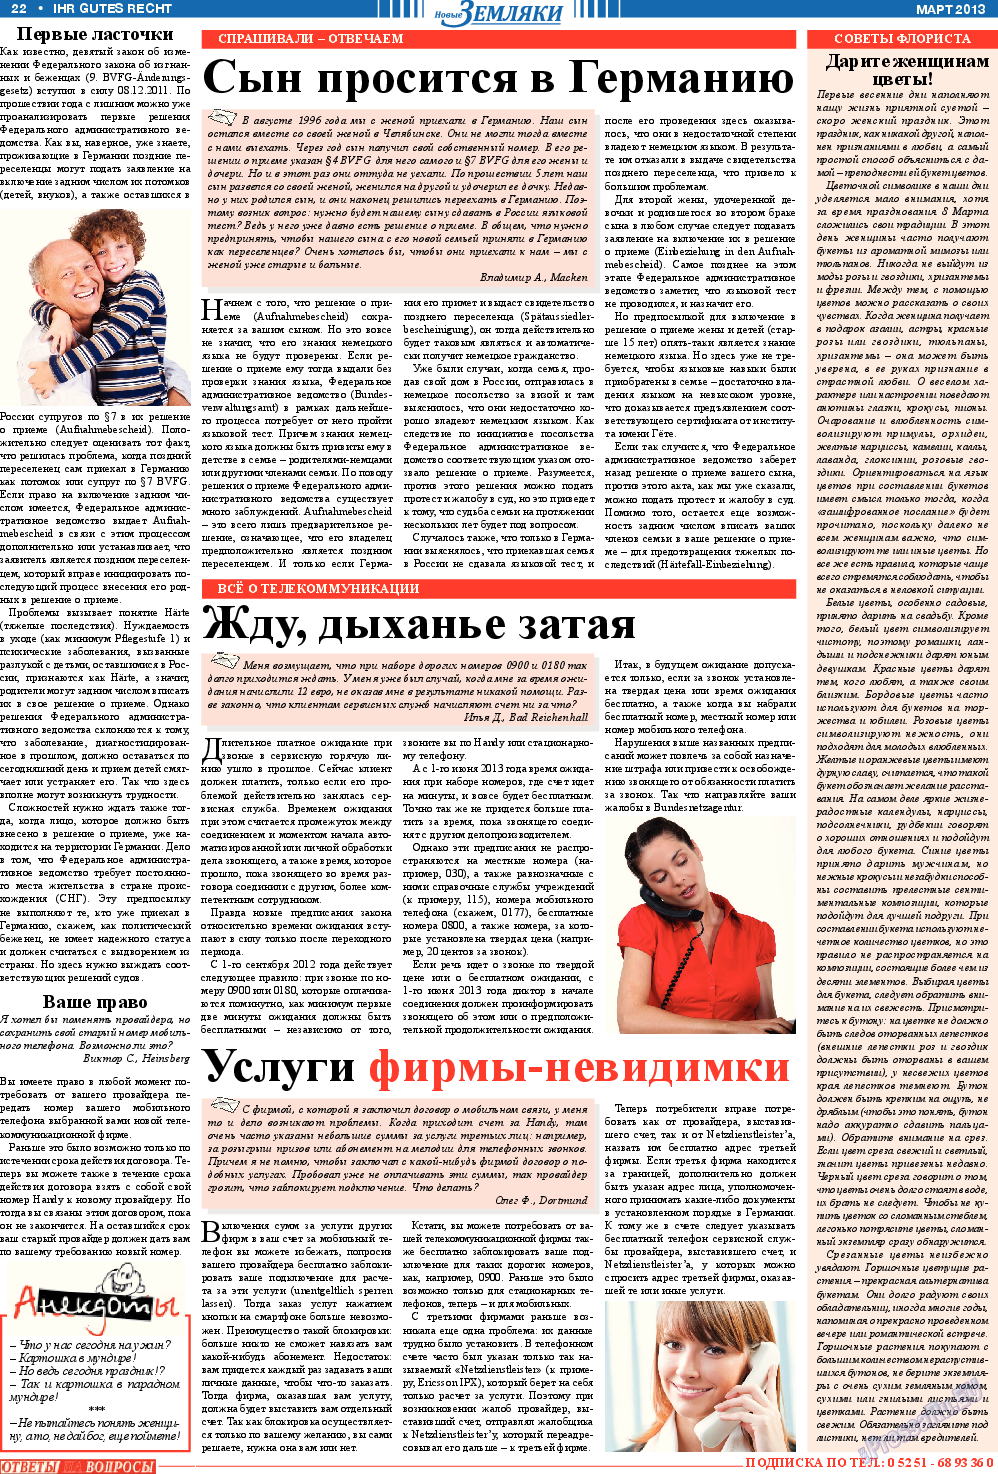 Новые Земляки, газета. 2013 №3 стр.22